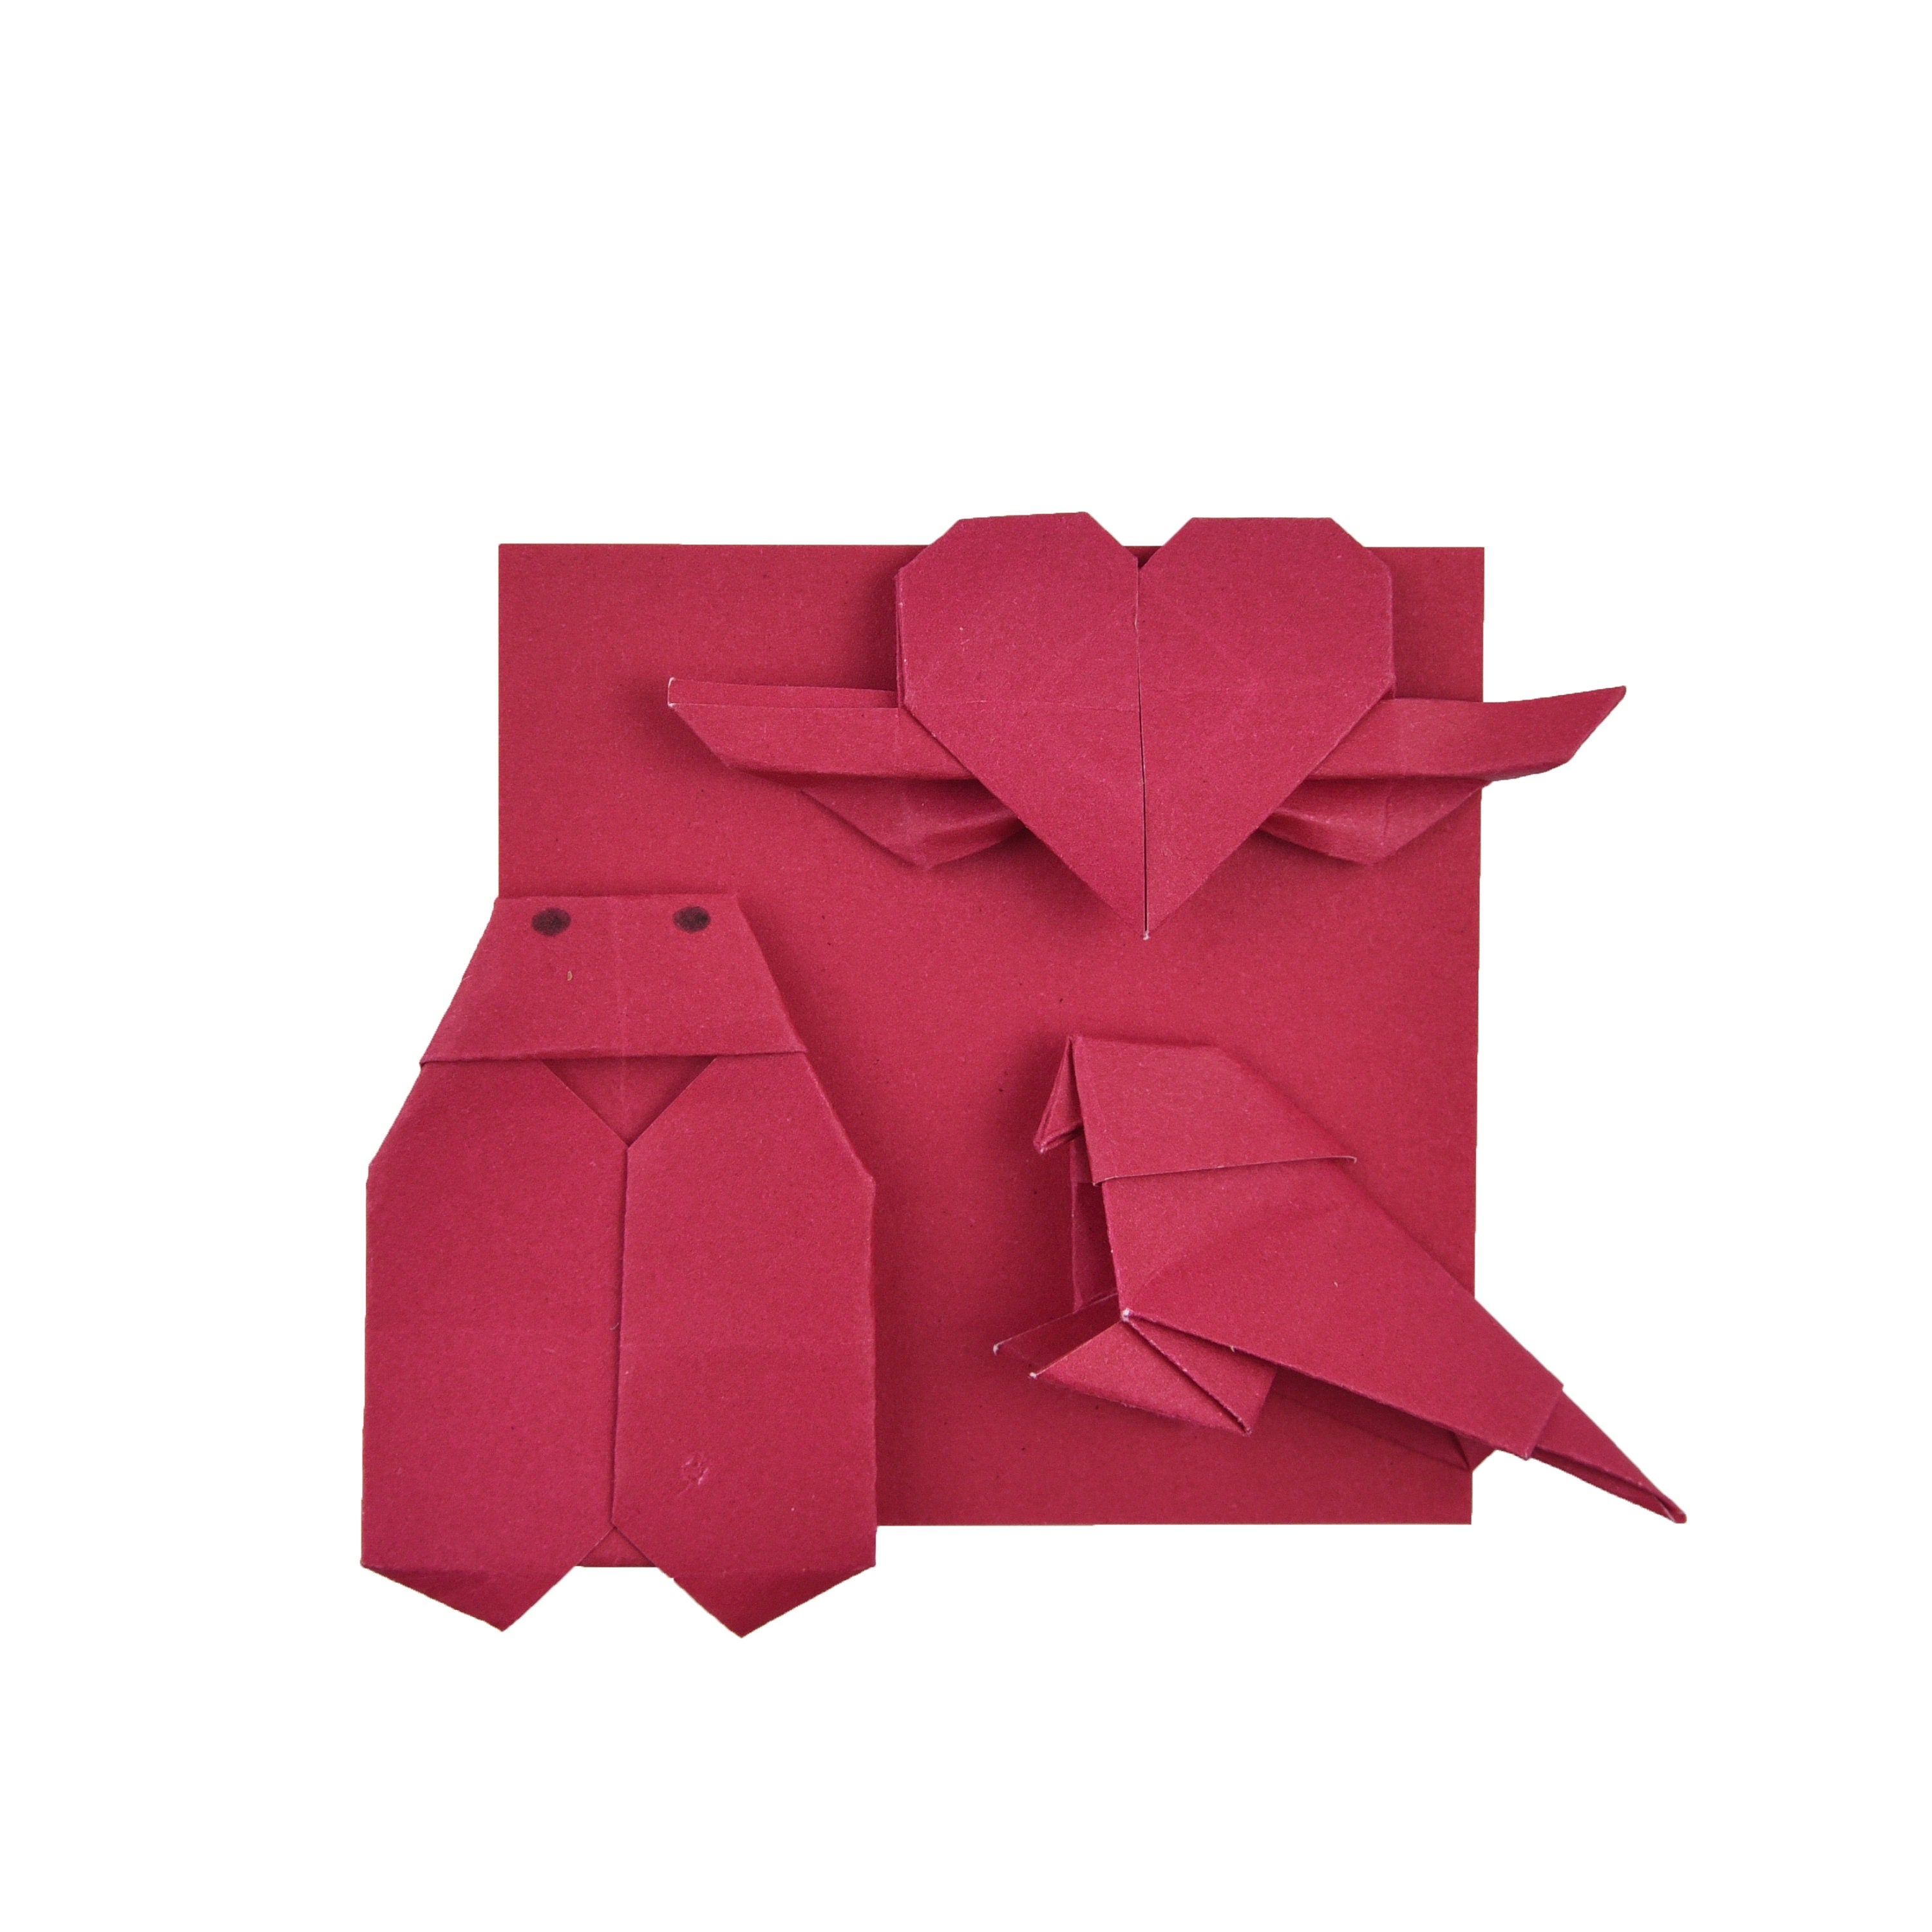 100 Hojas de Papel Origami - 6x6 pulgadas - Paquete de Papel Cuadrado para Plegar, Grullas de Origami y Decoración - S15